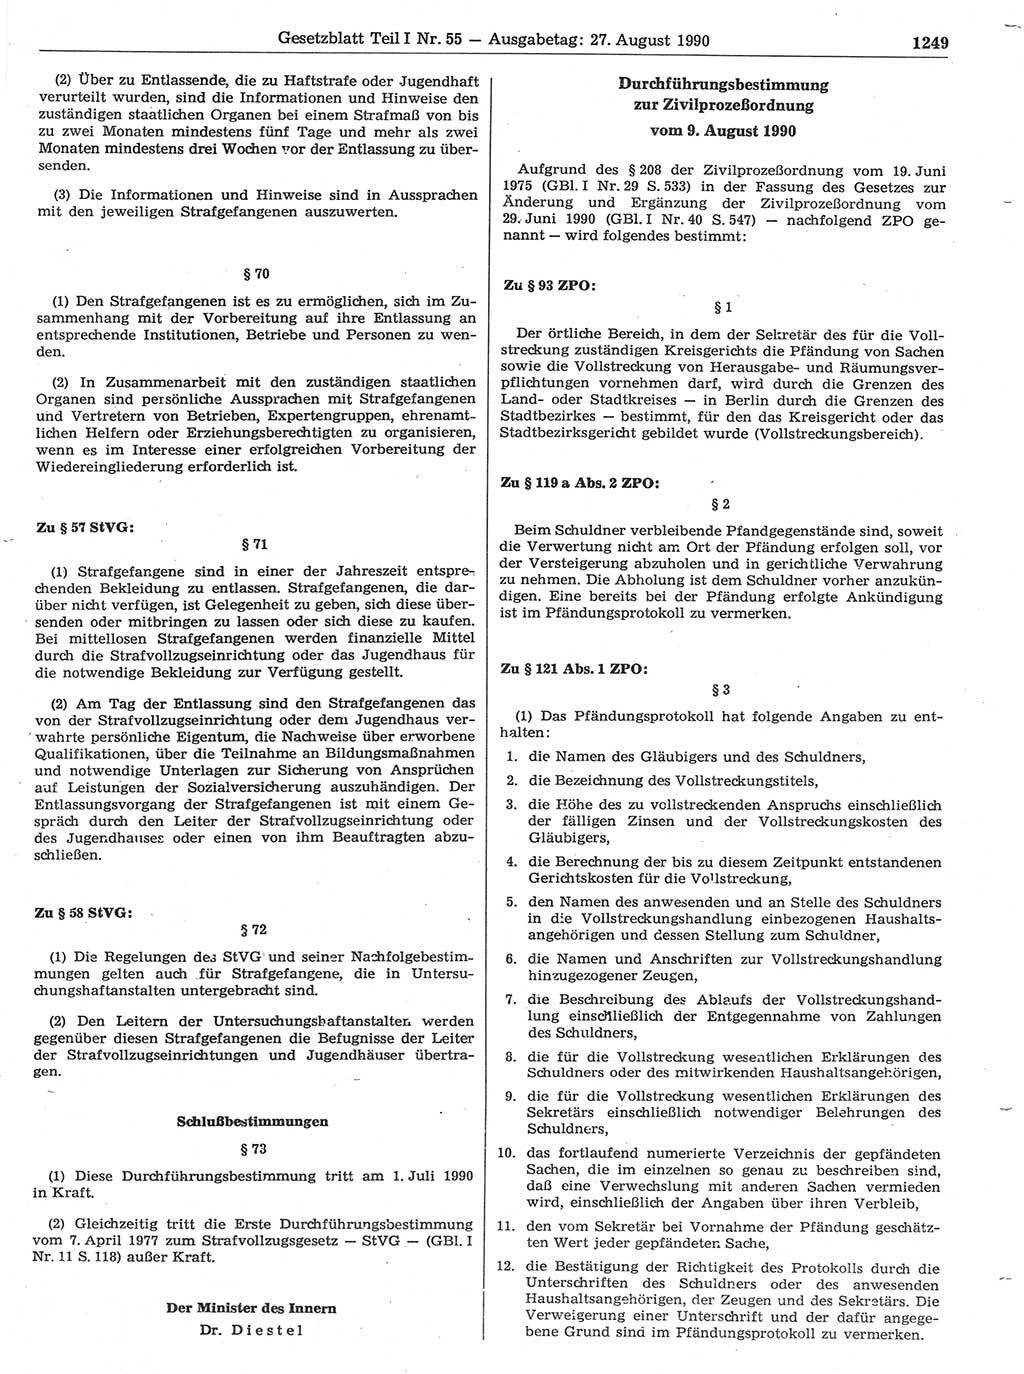 Gesetzblatt (GBl.) der Deutschen Demokratischen Republik (DDR) Teil Ⅰ 1990, Seite 1249 (GBl. DDR Ⅰ 1990, S. 1249)